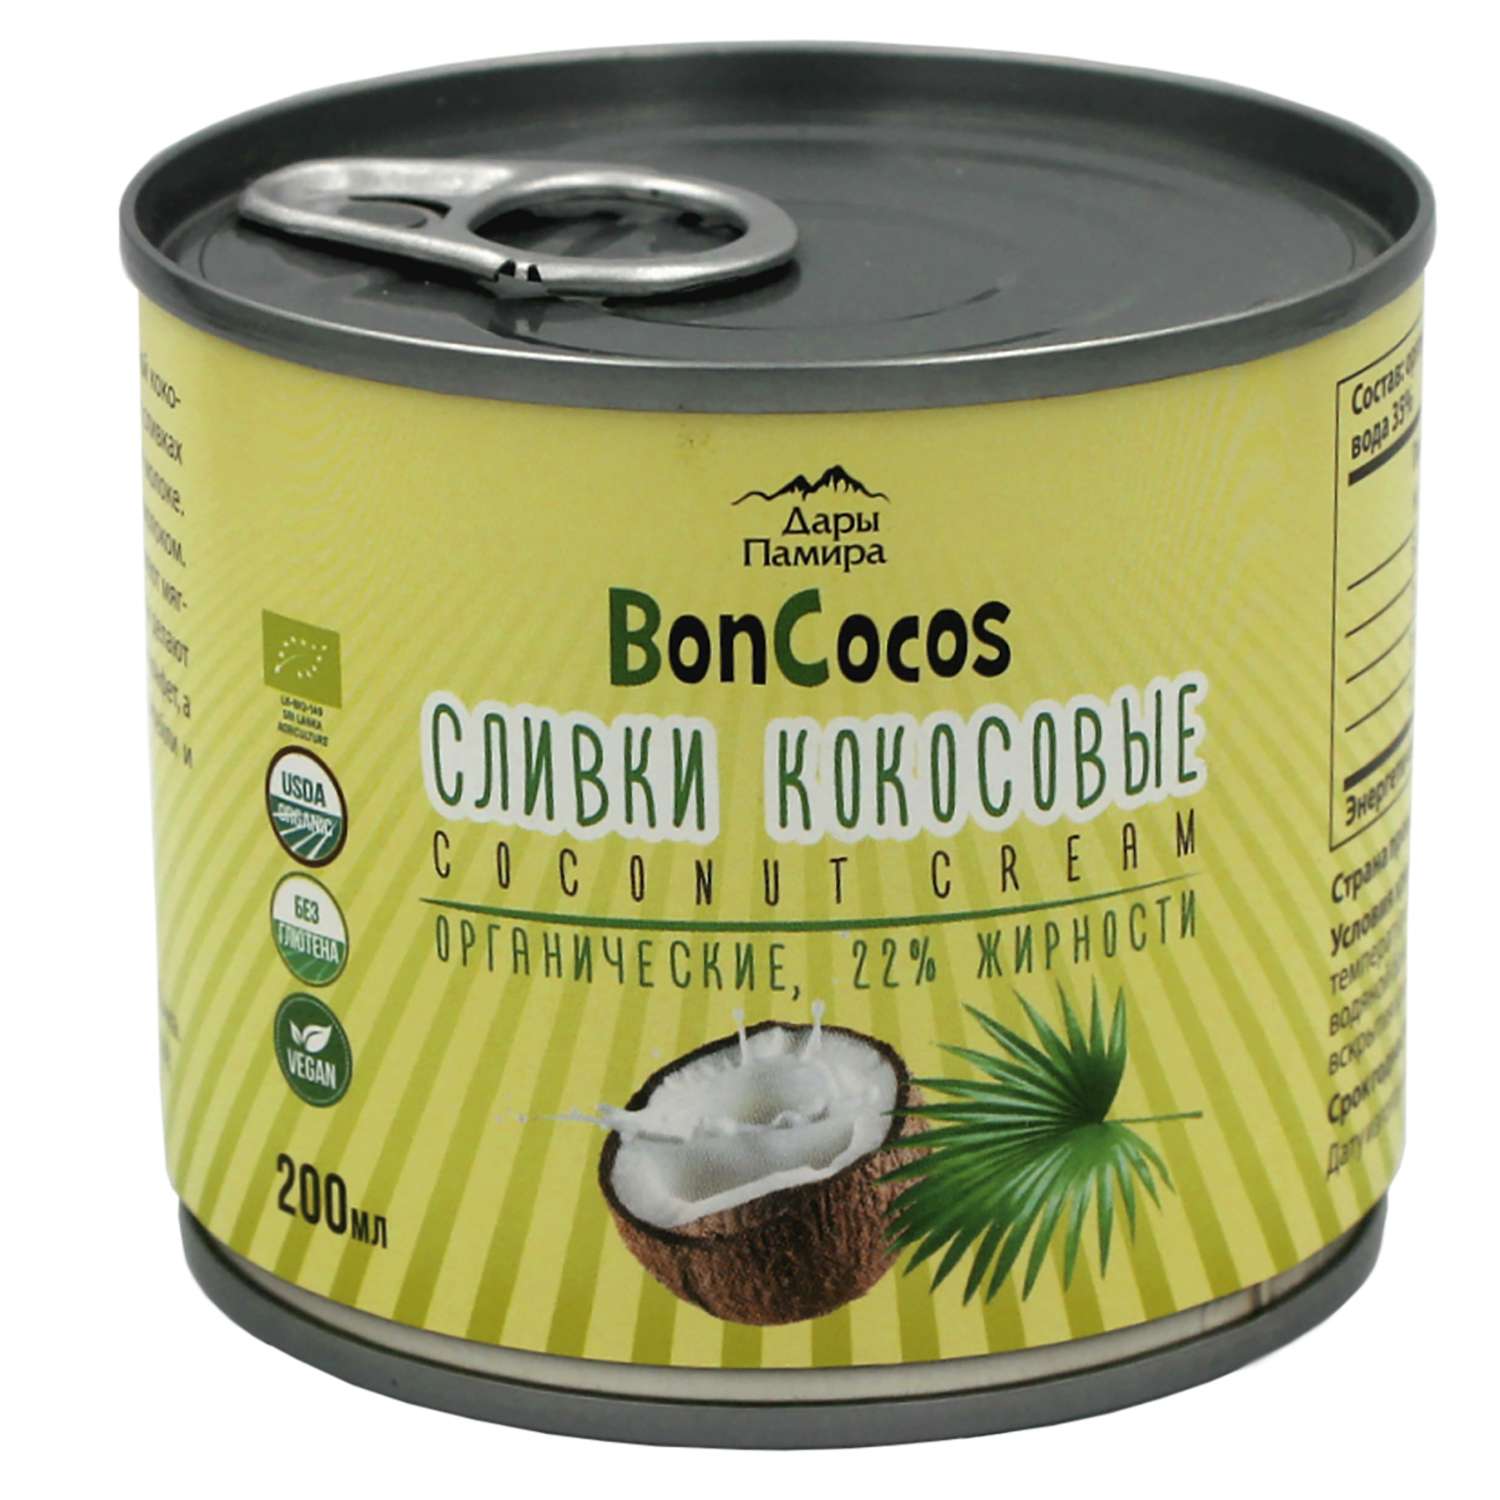 Сливки Дары Памира Boncocos Organic кокосовые 22% 200мл - фото 1